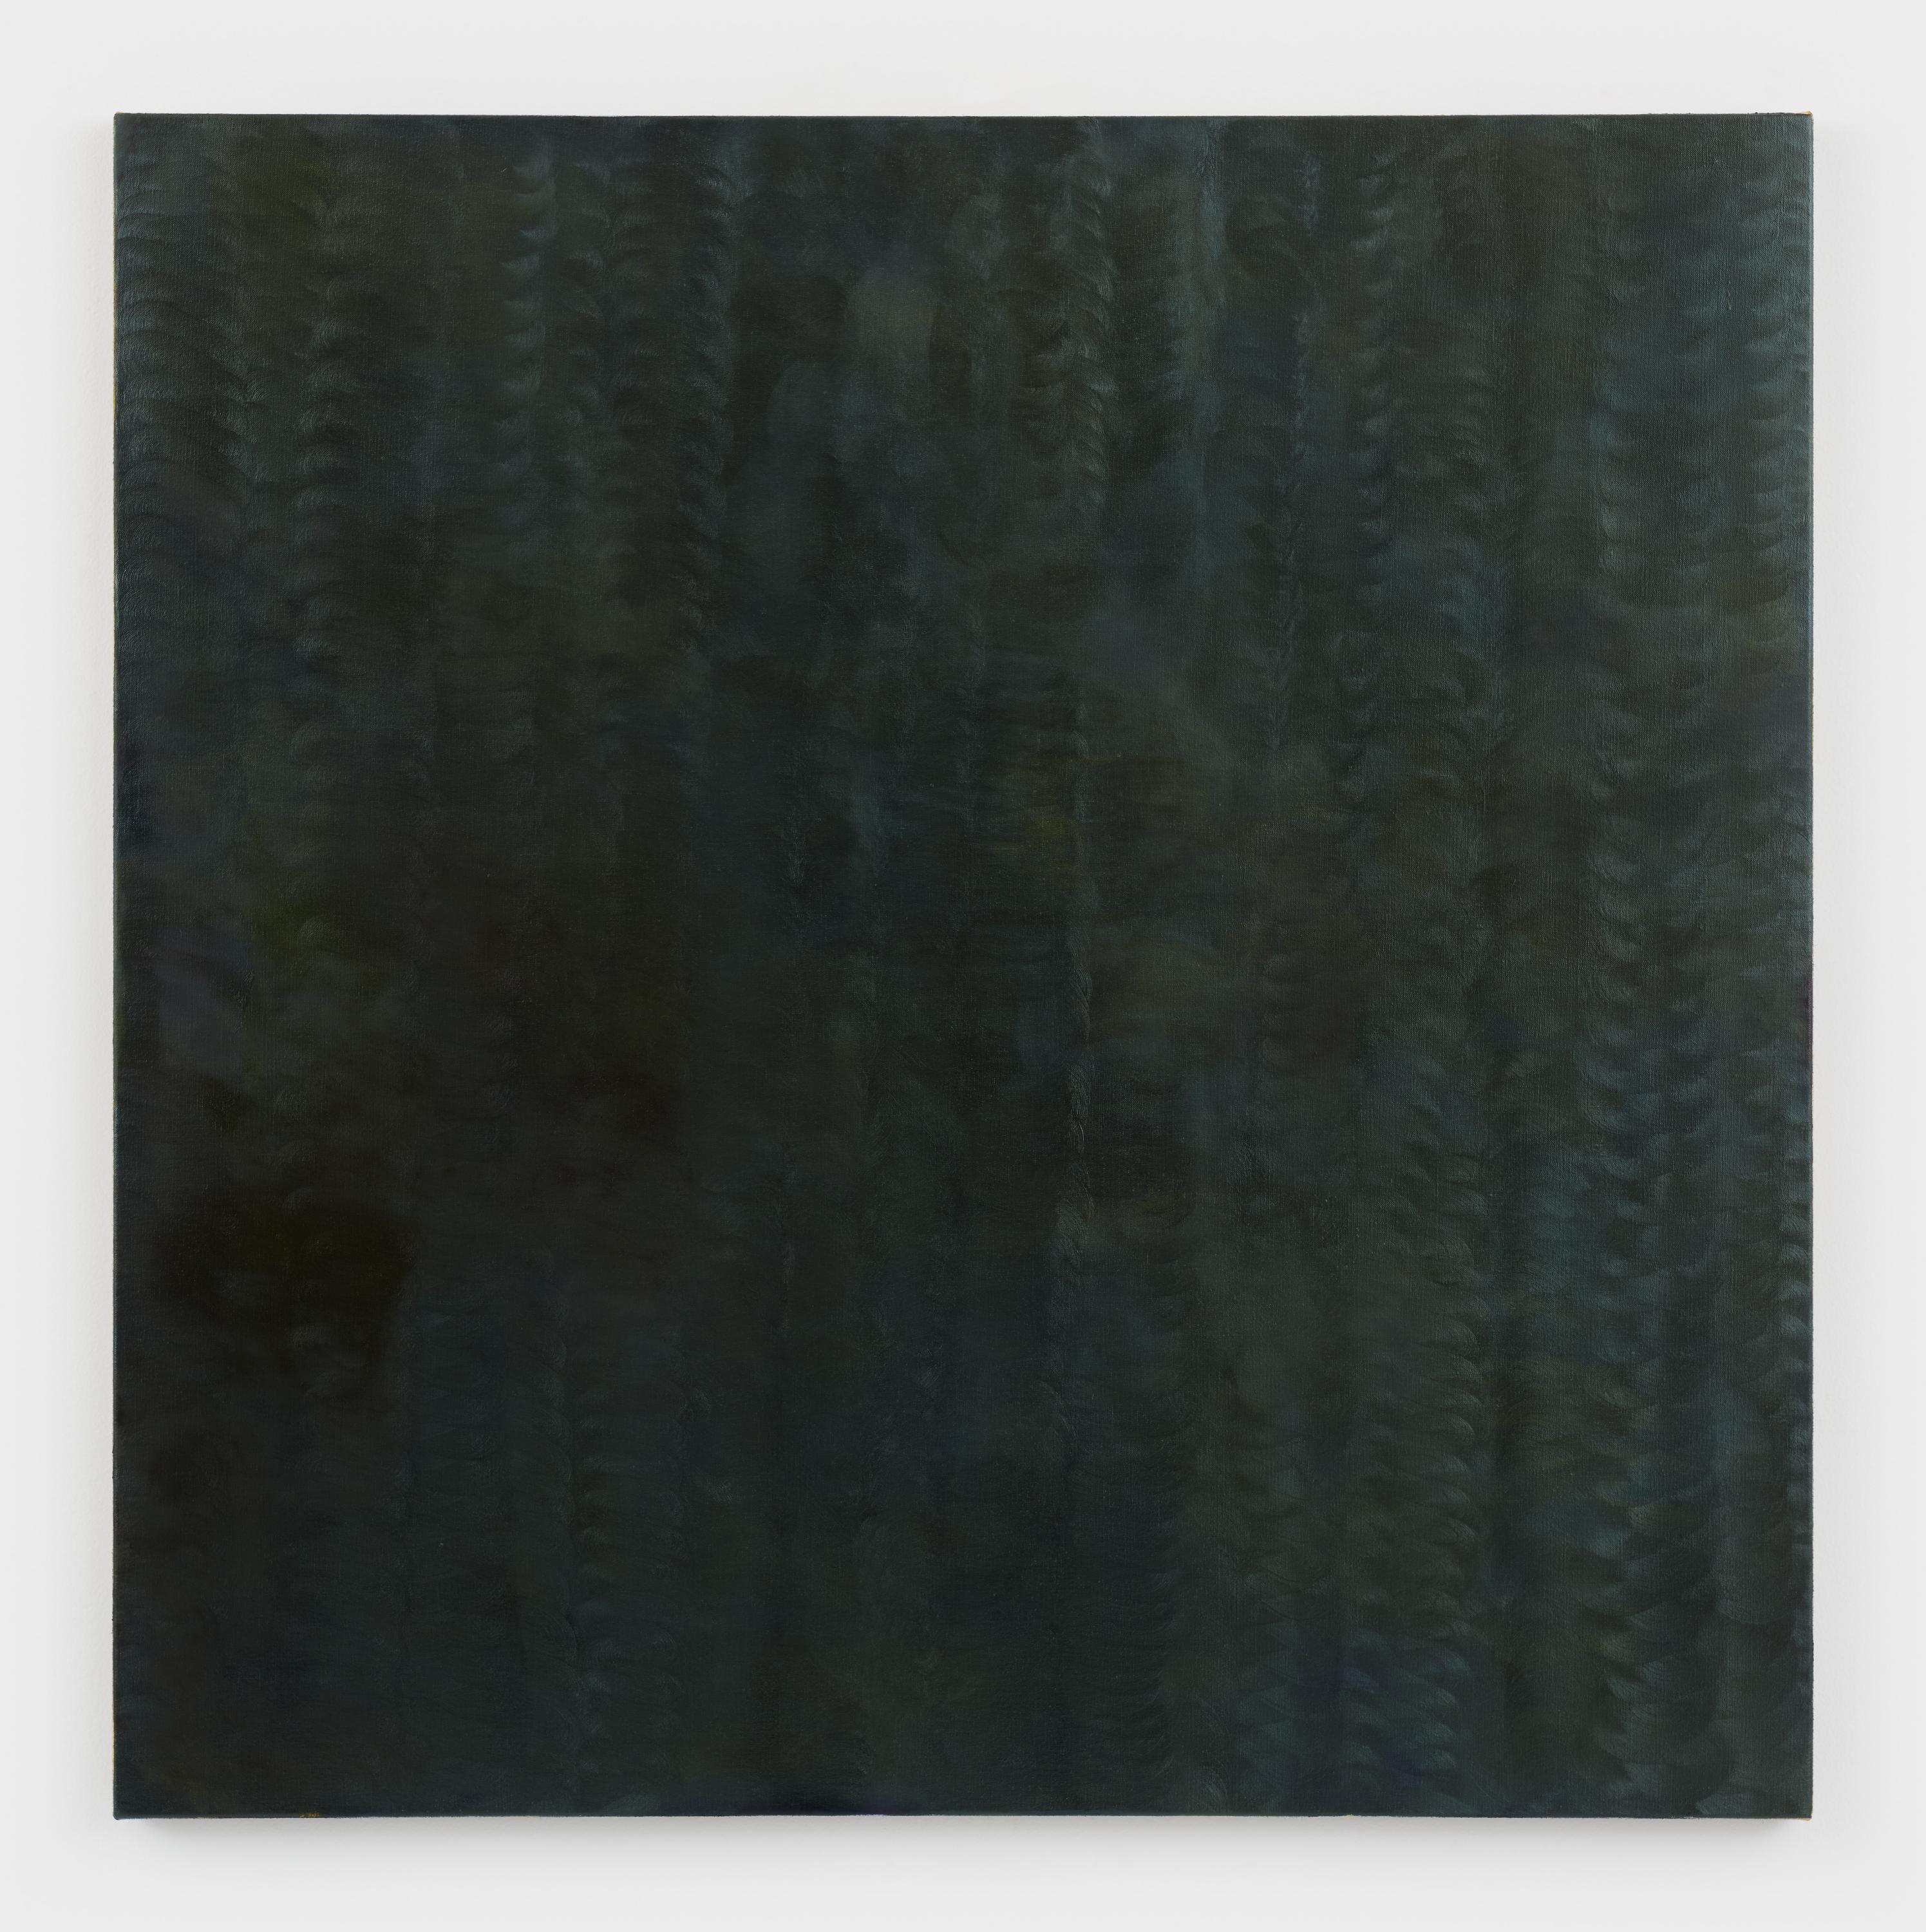 Kate Spencer Stewart, Monk, 2022, oil on linen, 43 1/4 x 43 1/4".